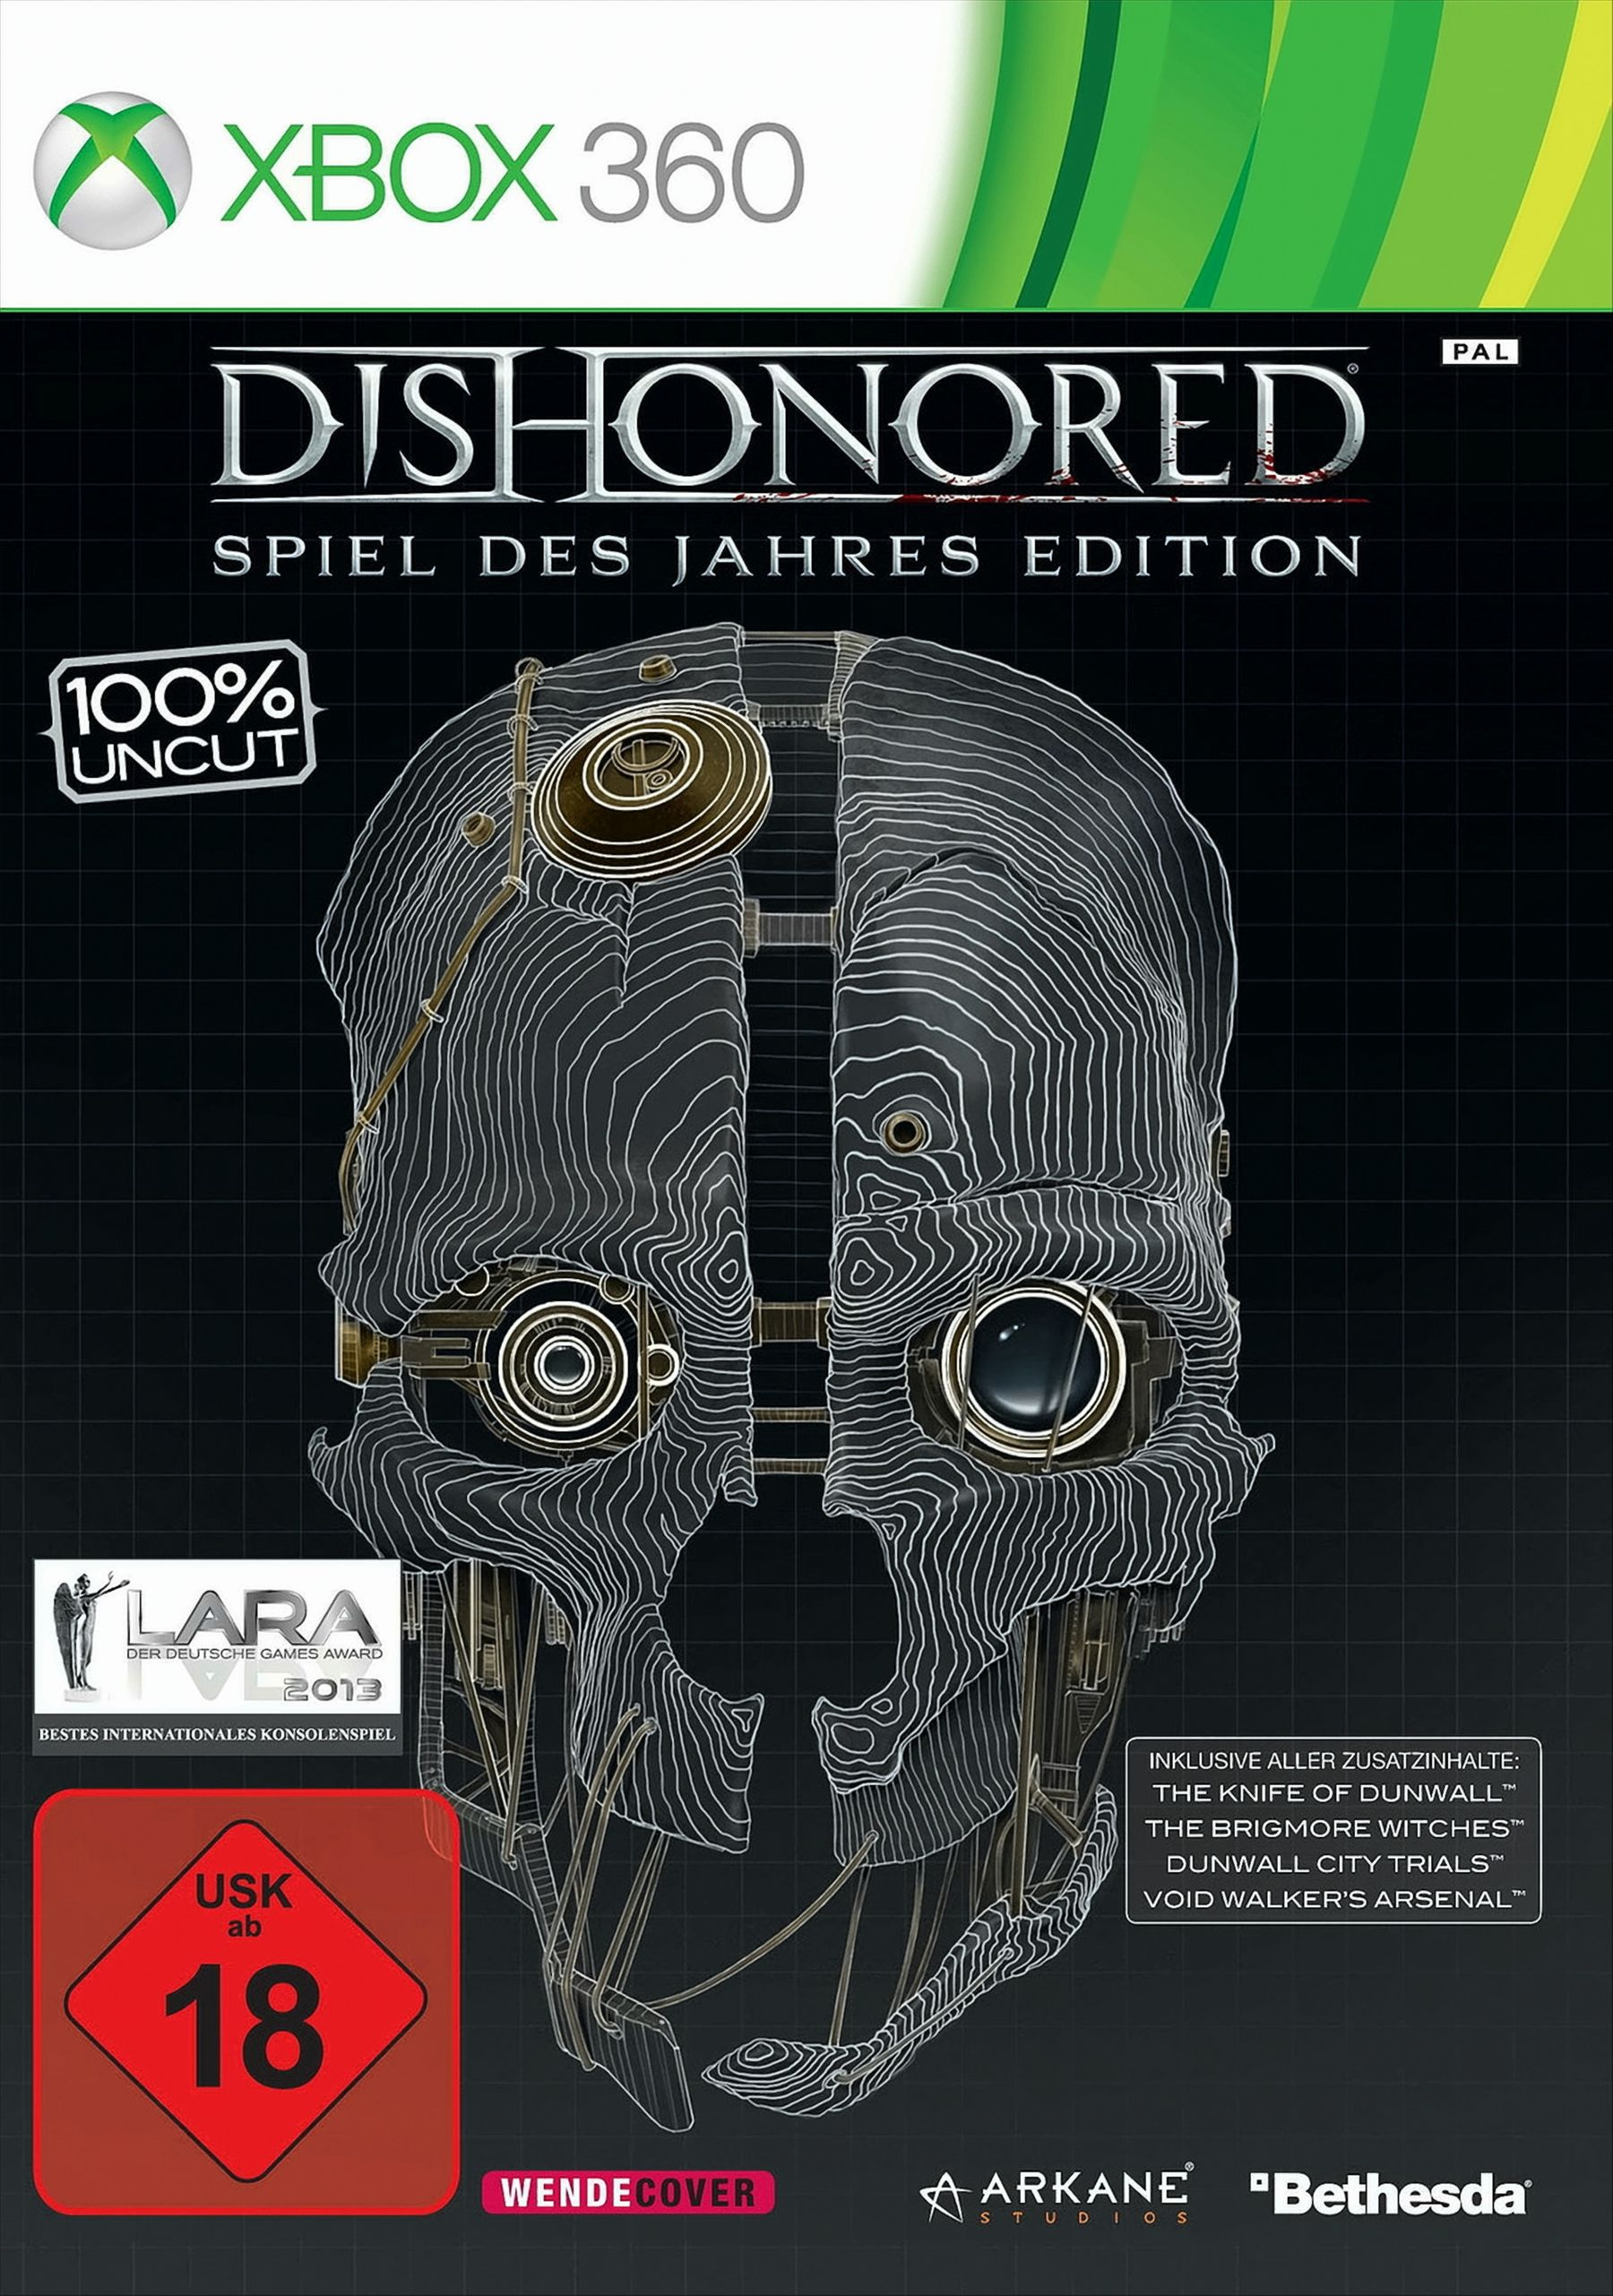 Edition [Xbox 360] Jahres Spiel des Dishonored - -